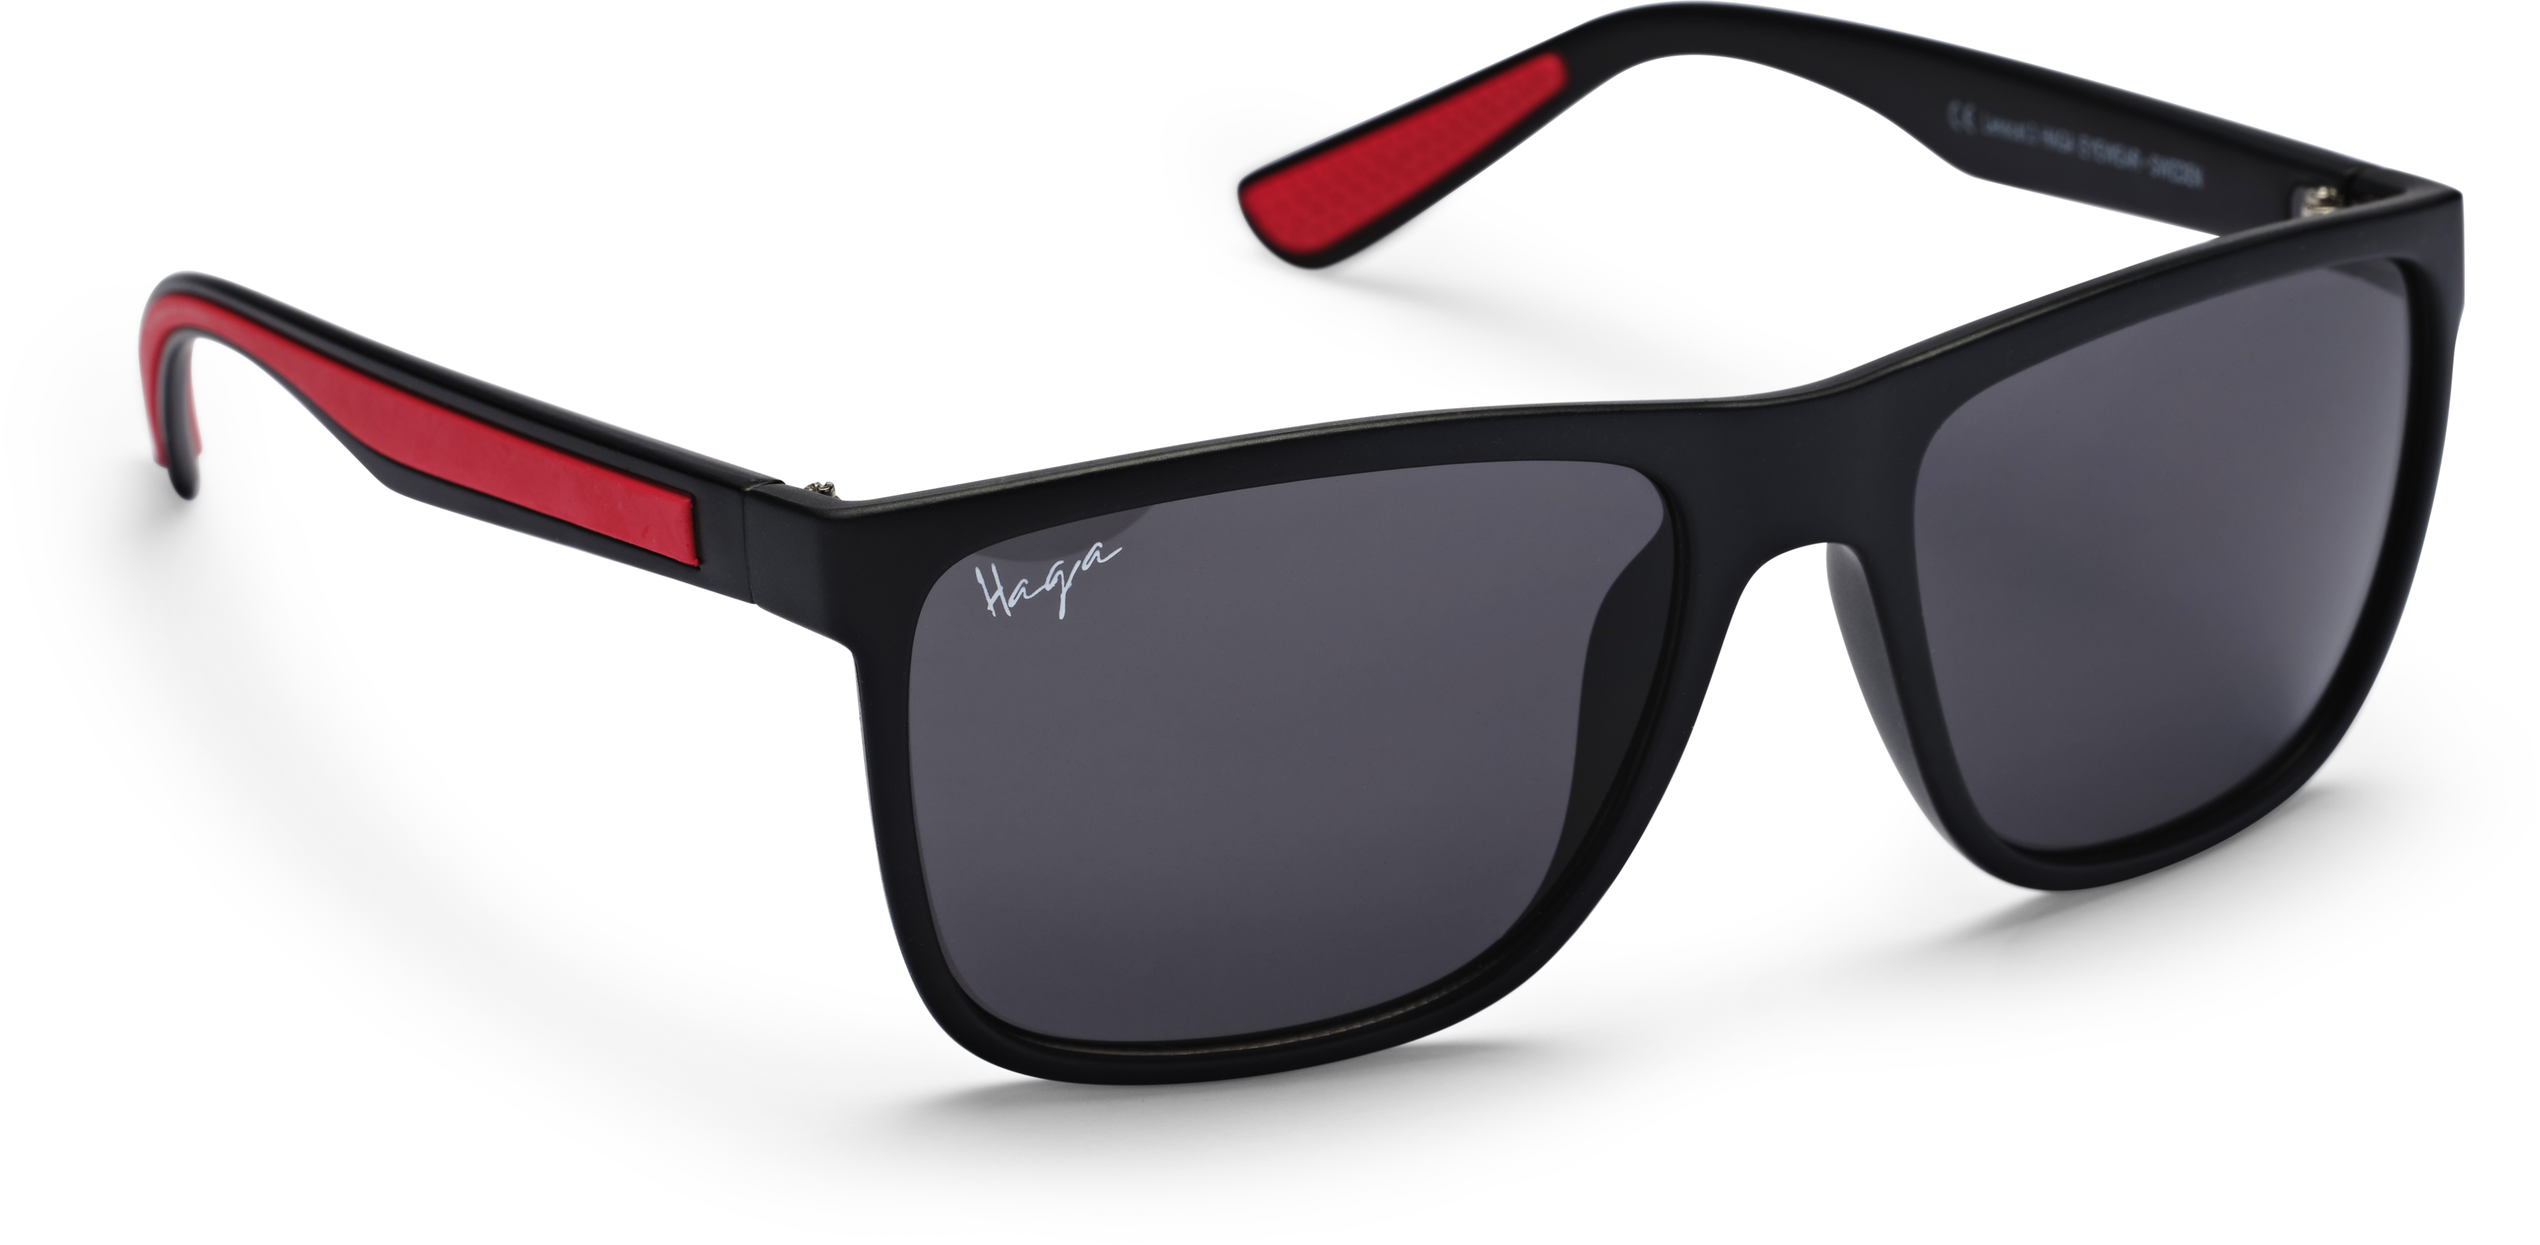 Haga Solglasögon Bern Matt Black - Grey lens, 1 styck för 279 kr på Lloyds Apotek